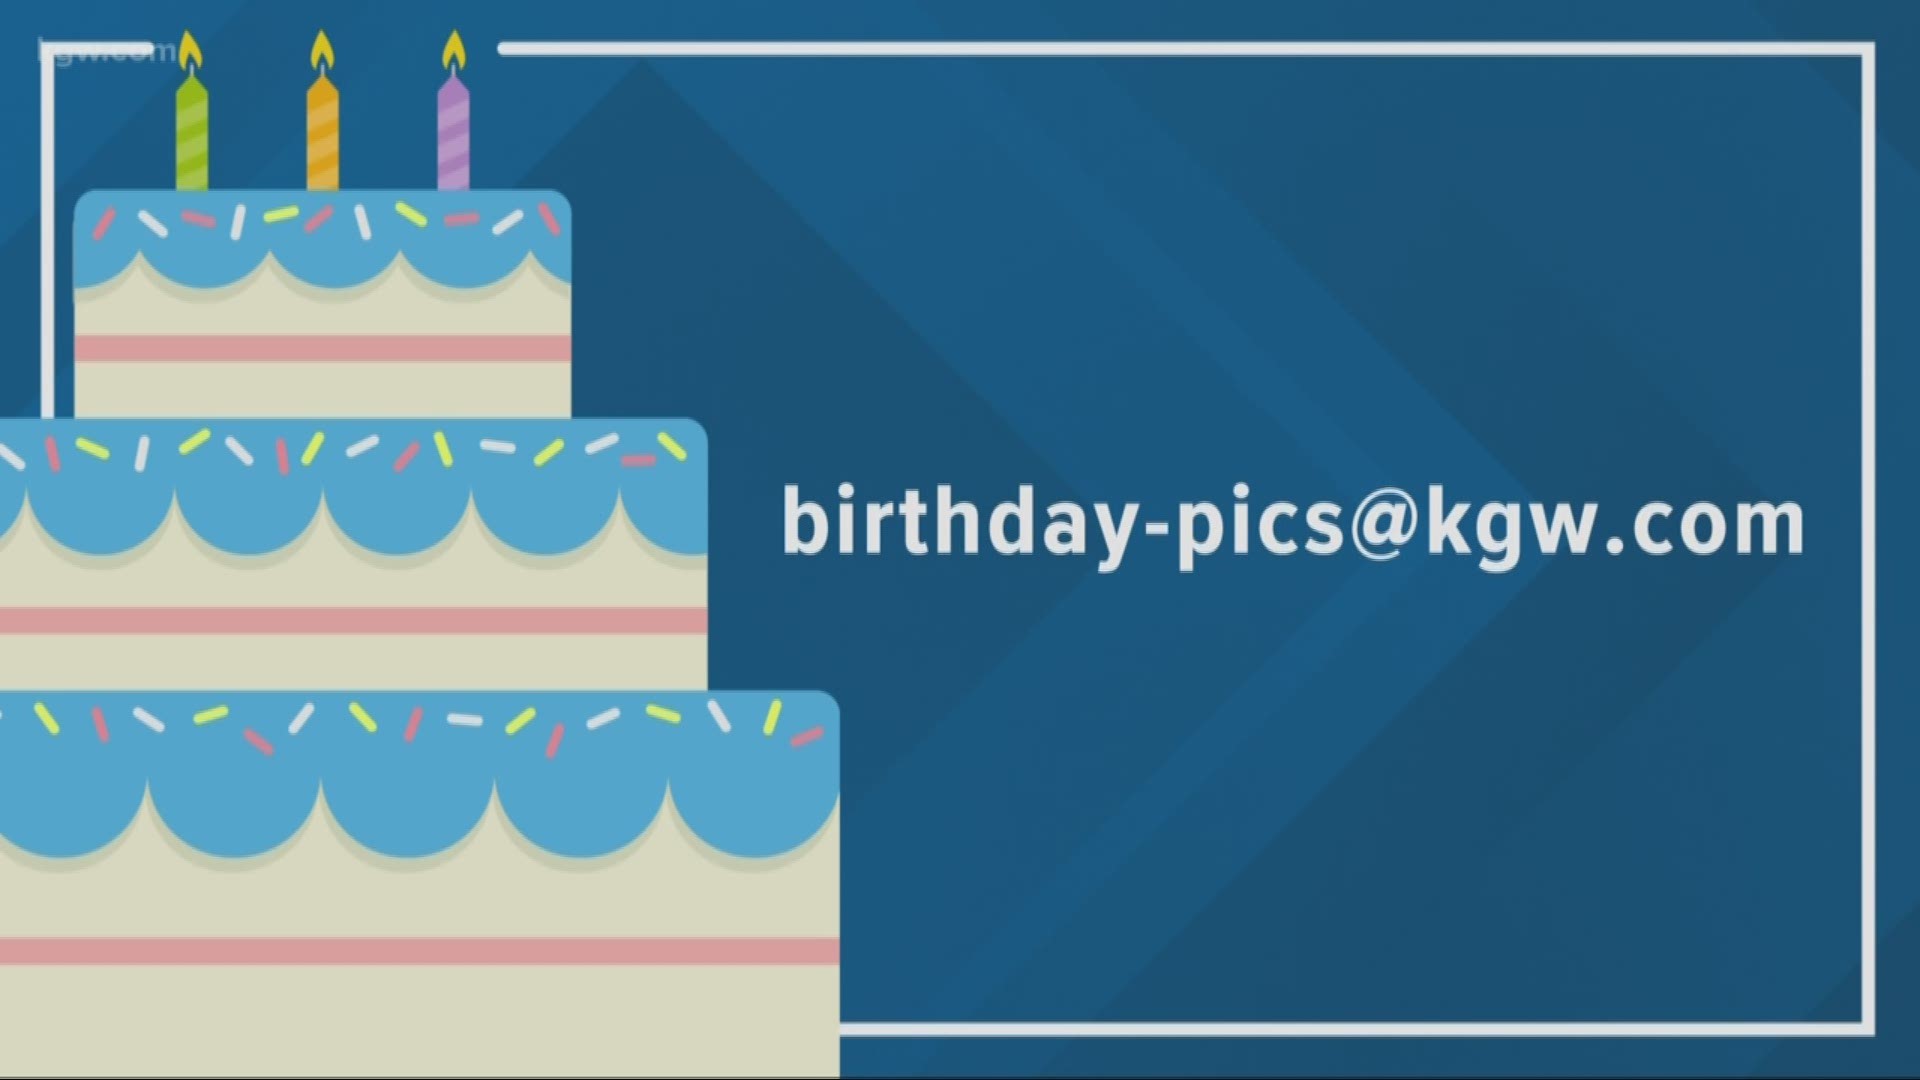 KGW viewer birthdays: 1-22-19